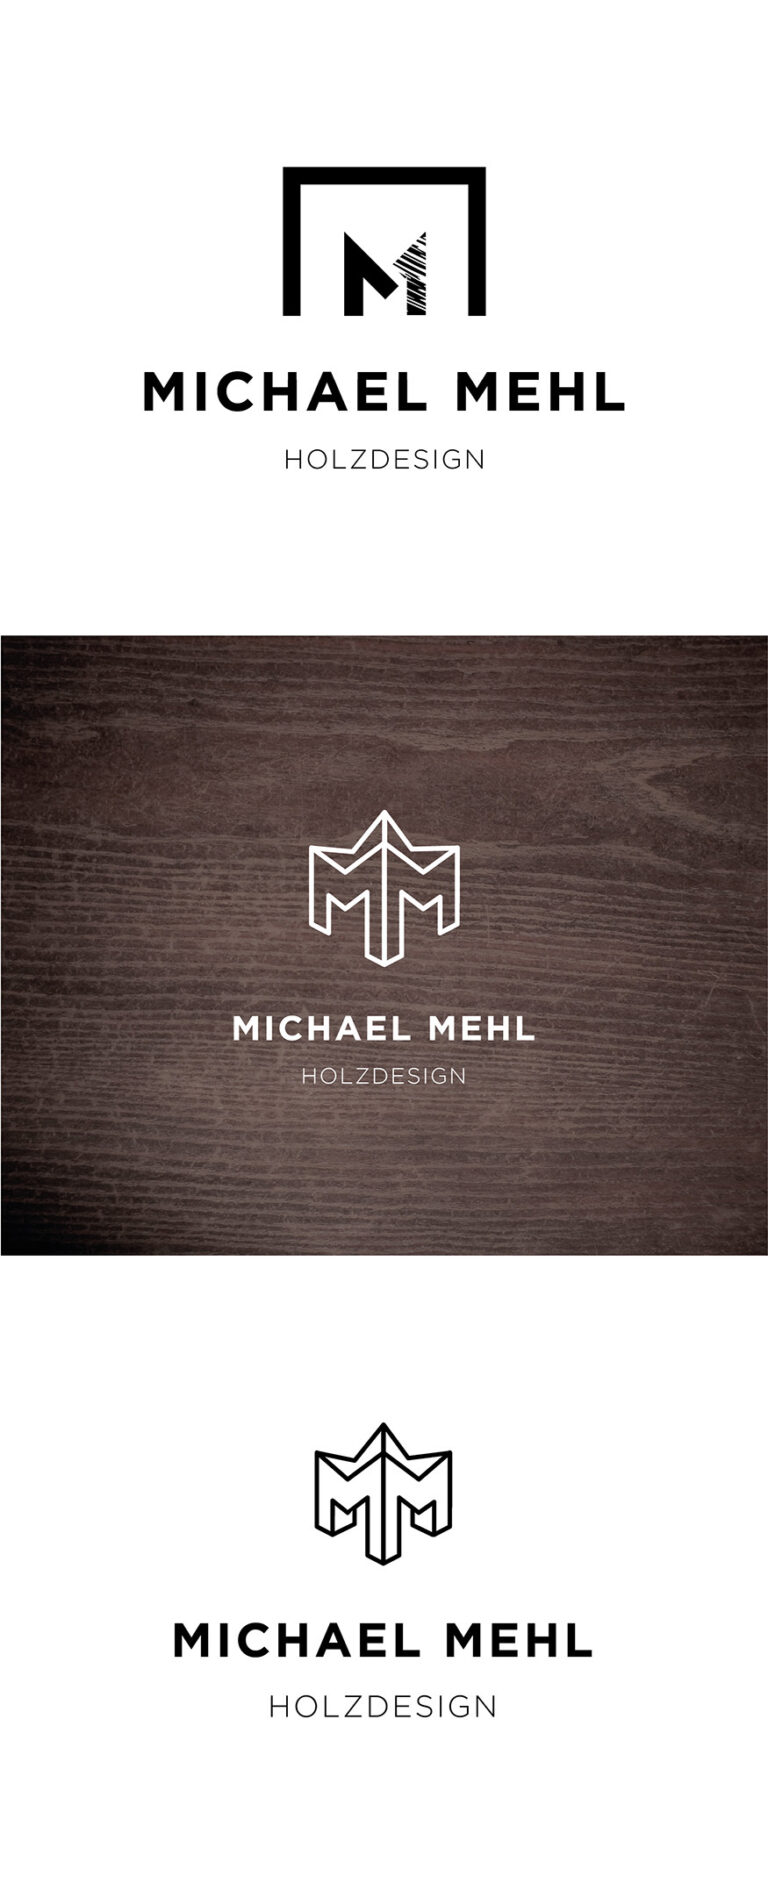 Portfolio Grafikdesign - Logodesign für Schreiner Michael Mehl